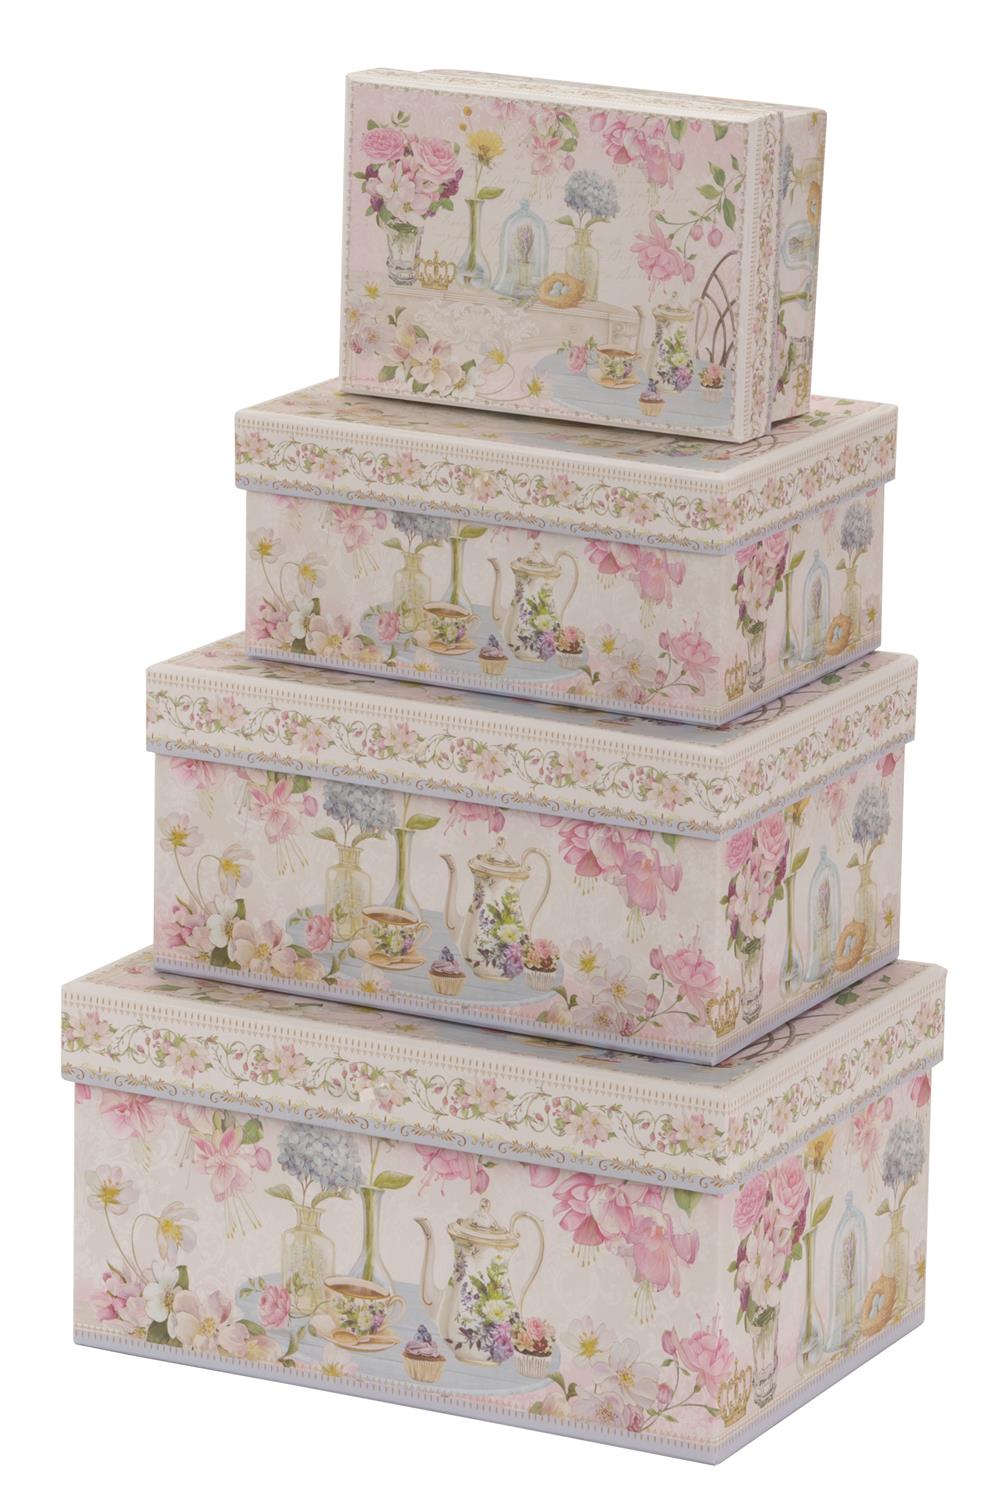 Pink floral design cardboard storage boxes 2 pack